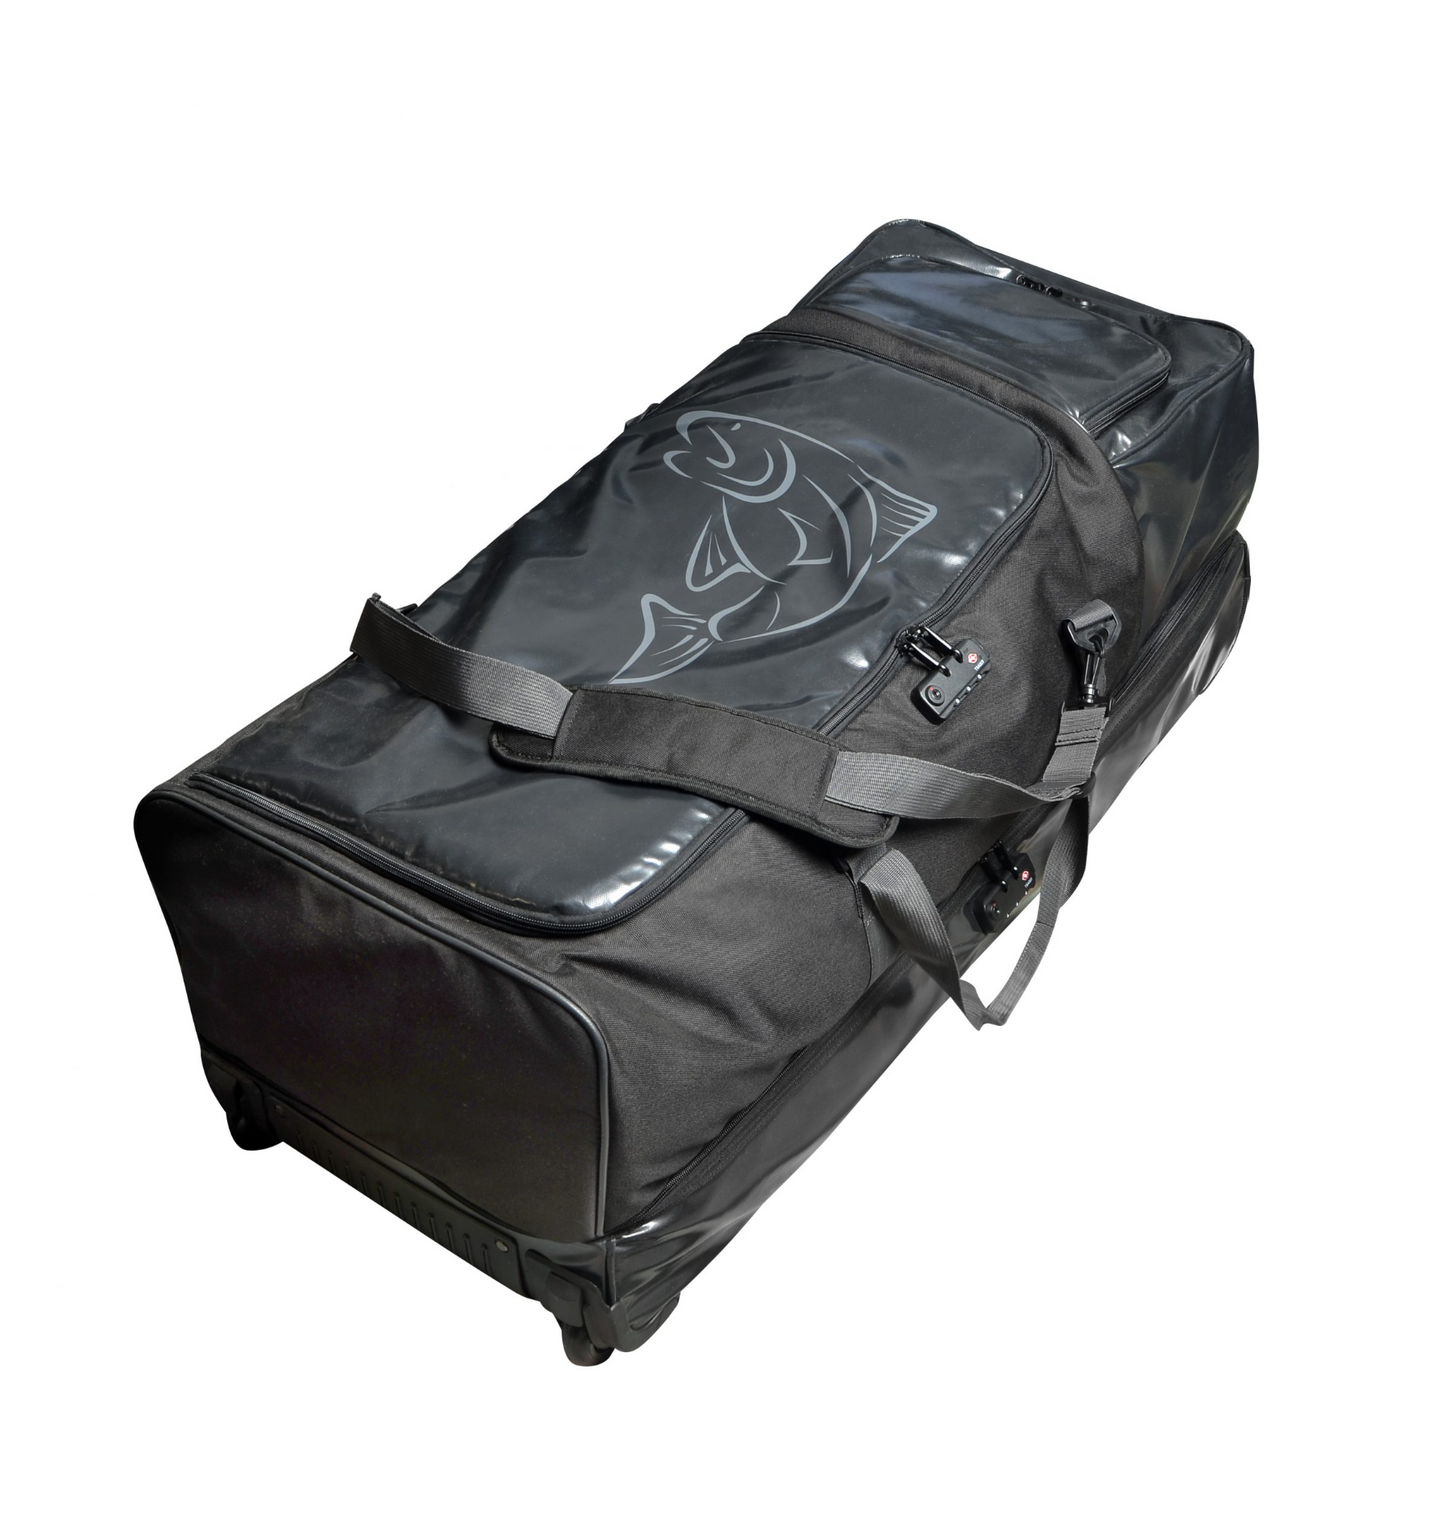 Stalker Legend Series Travel Bag